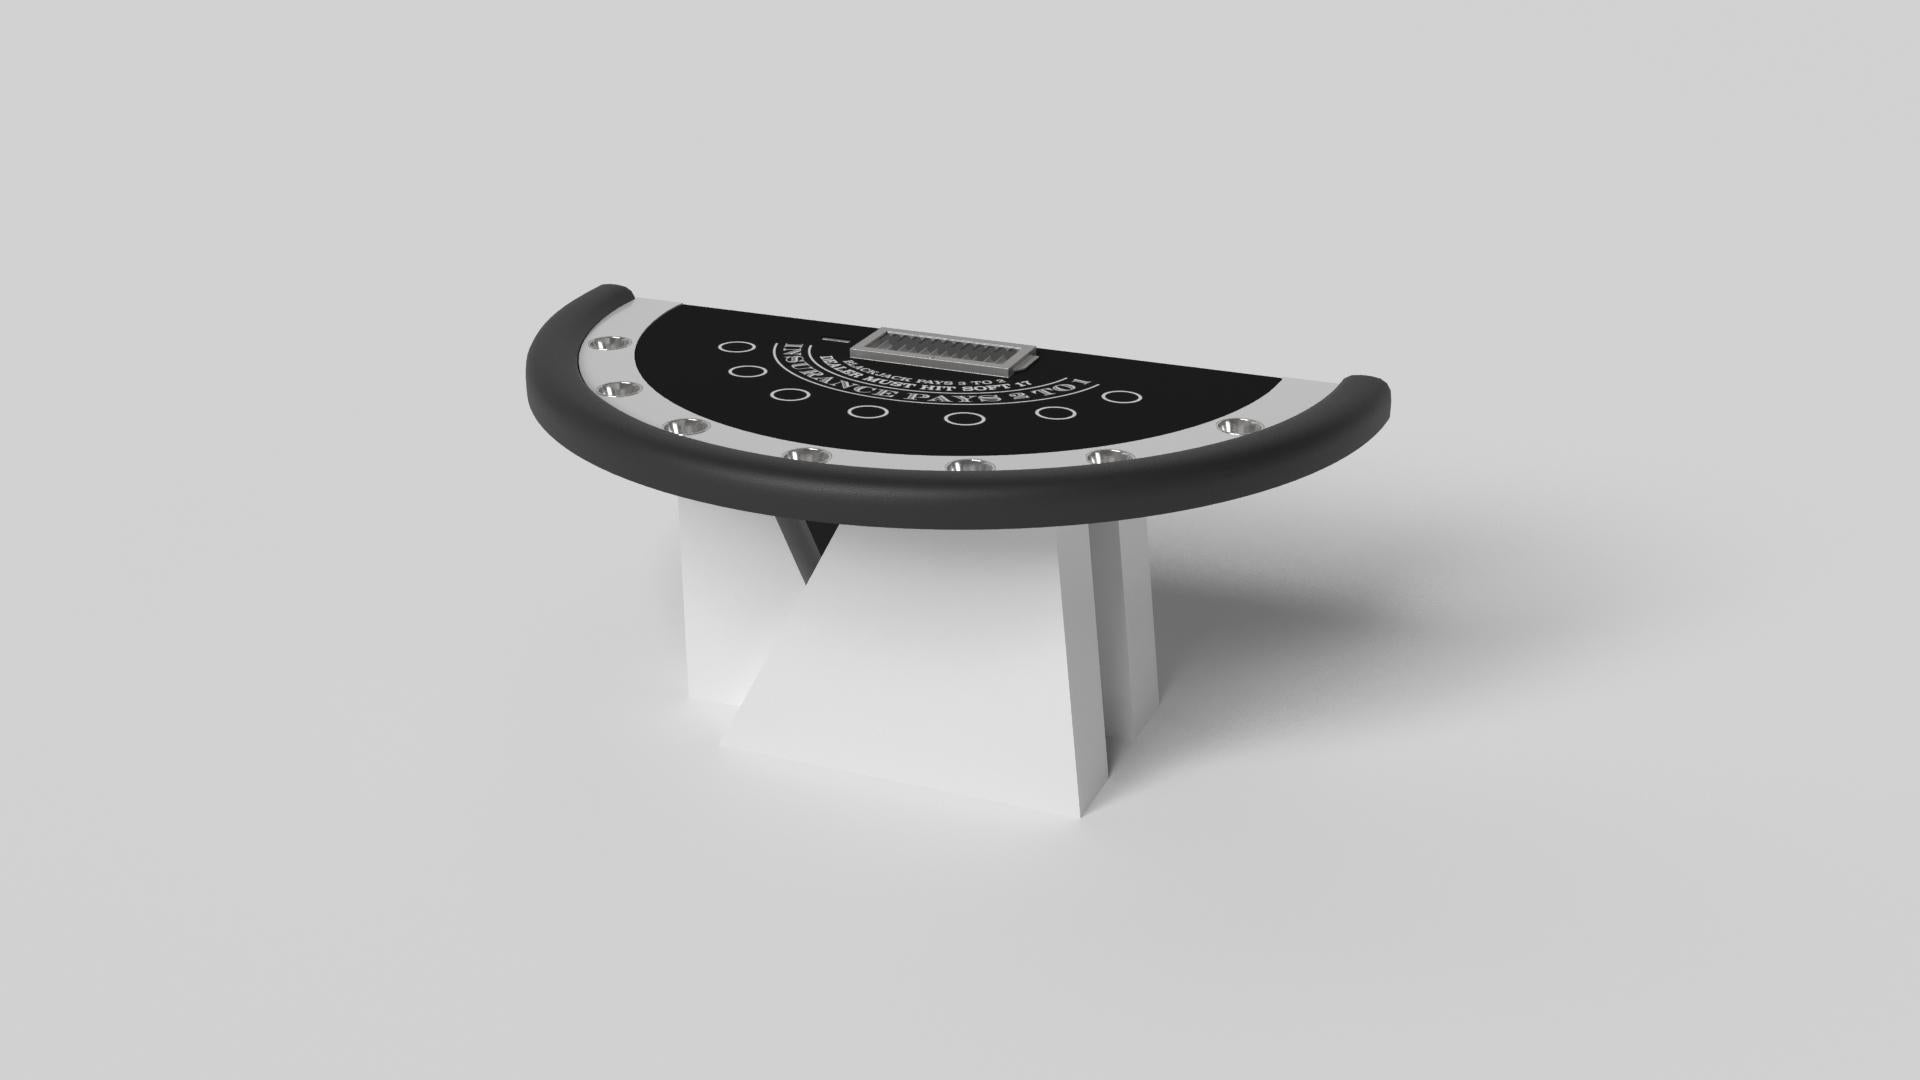 Ein asymmetrischer Sockel erzeugt eine frei schwebende Silhouette, die den Blackjack-Tisch Stilt aus Nussbaumholz zu einer überzeugenden, zeitgenössischen Ergänzung für das moderne Zuhause macht. Dieser luxuriöse, handgefertigte Spieltisch ist mit